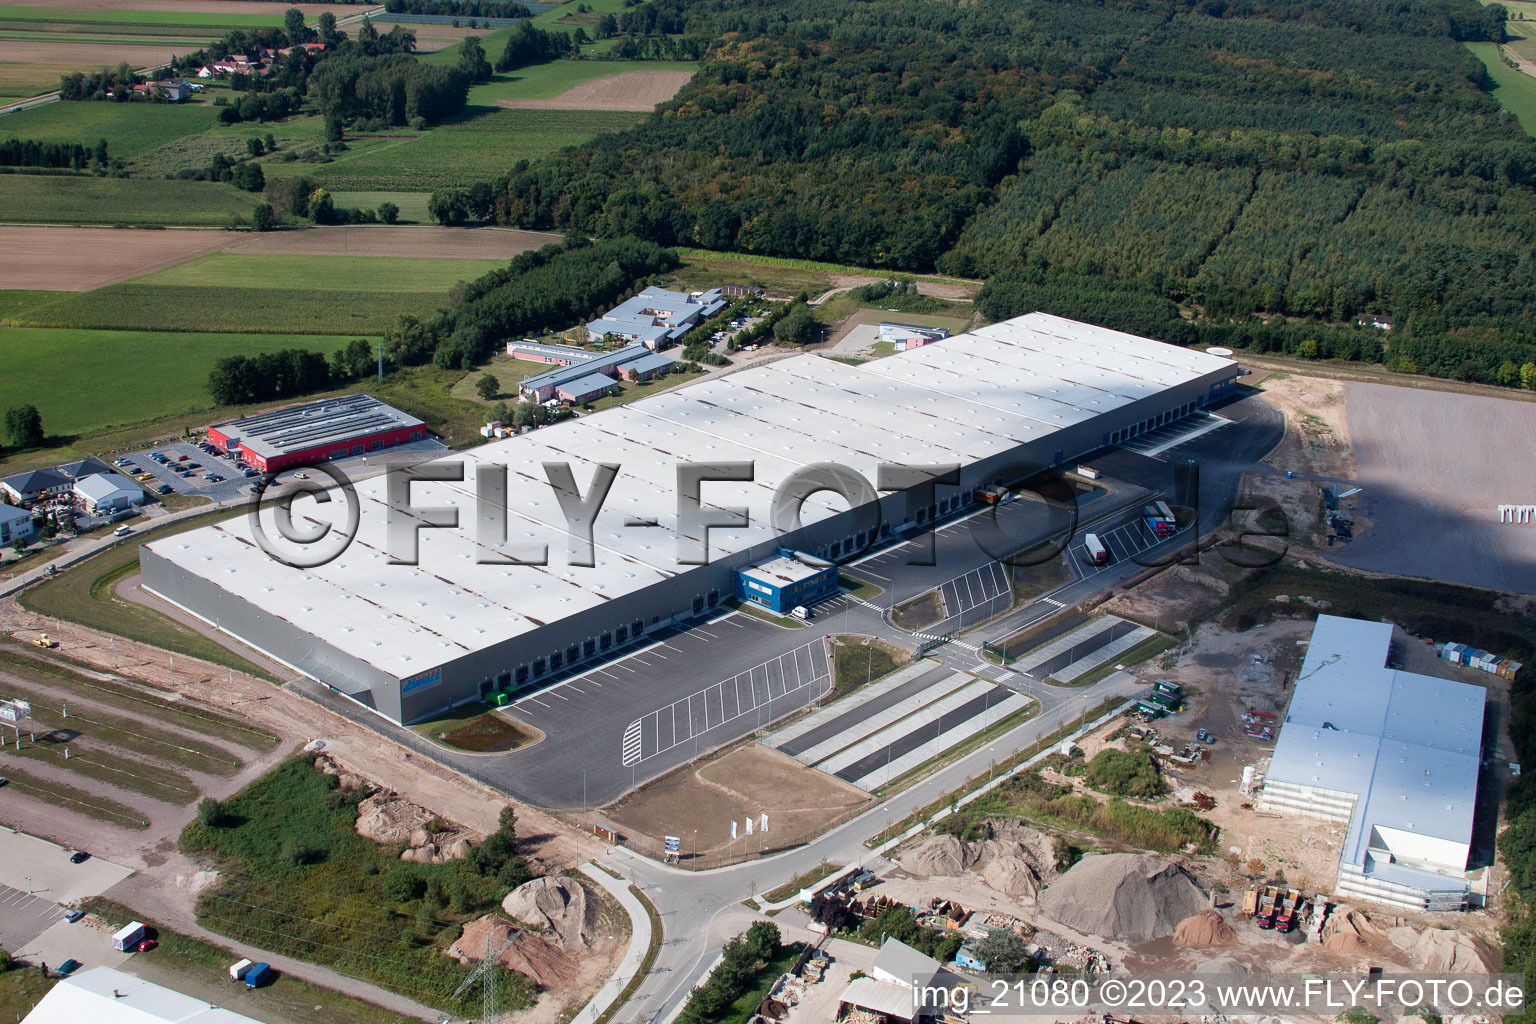 Centre logistique de coïncidence à le quartier Minderslachen in Kandel dans le département Rhénanie-Palatinat, Allemagne vu d'un drone